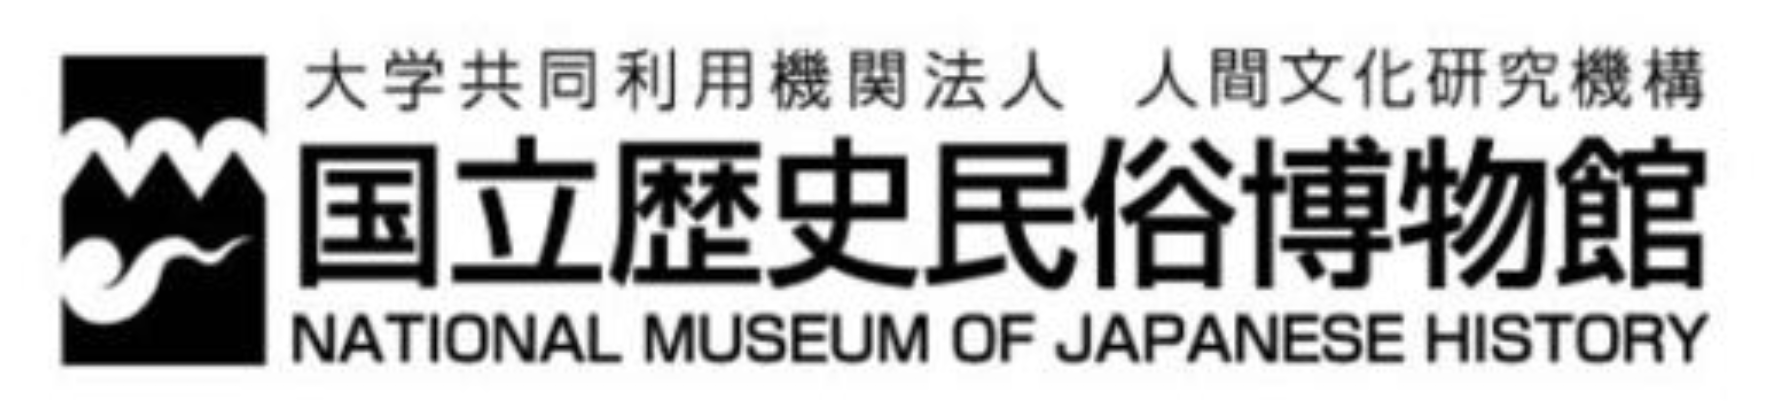 Rekihaku_logo